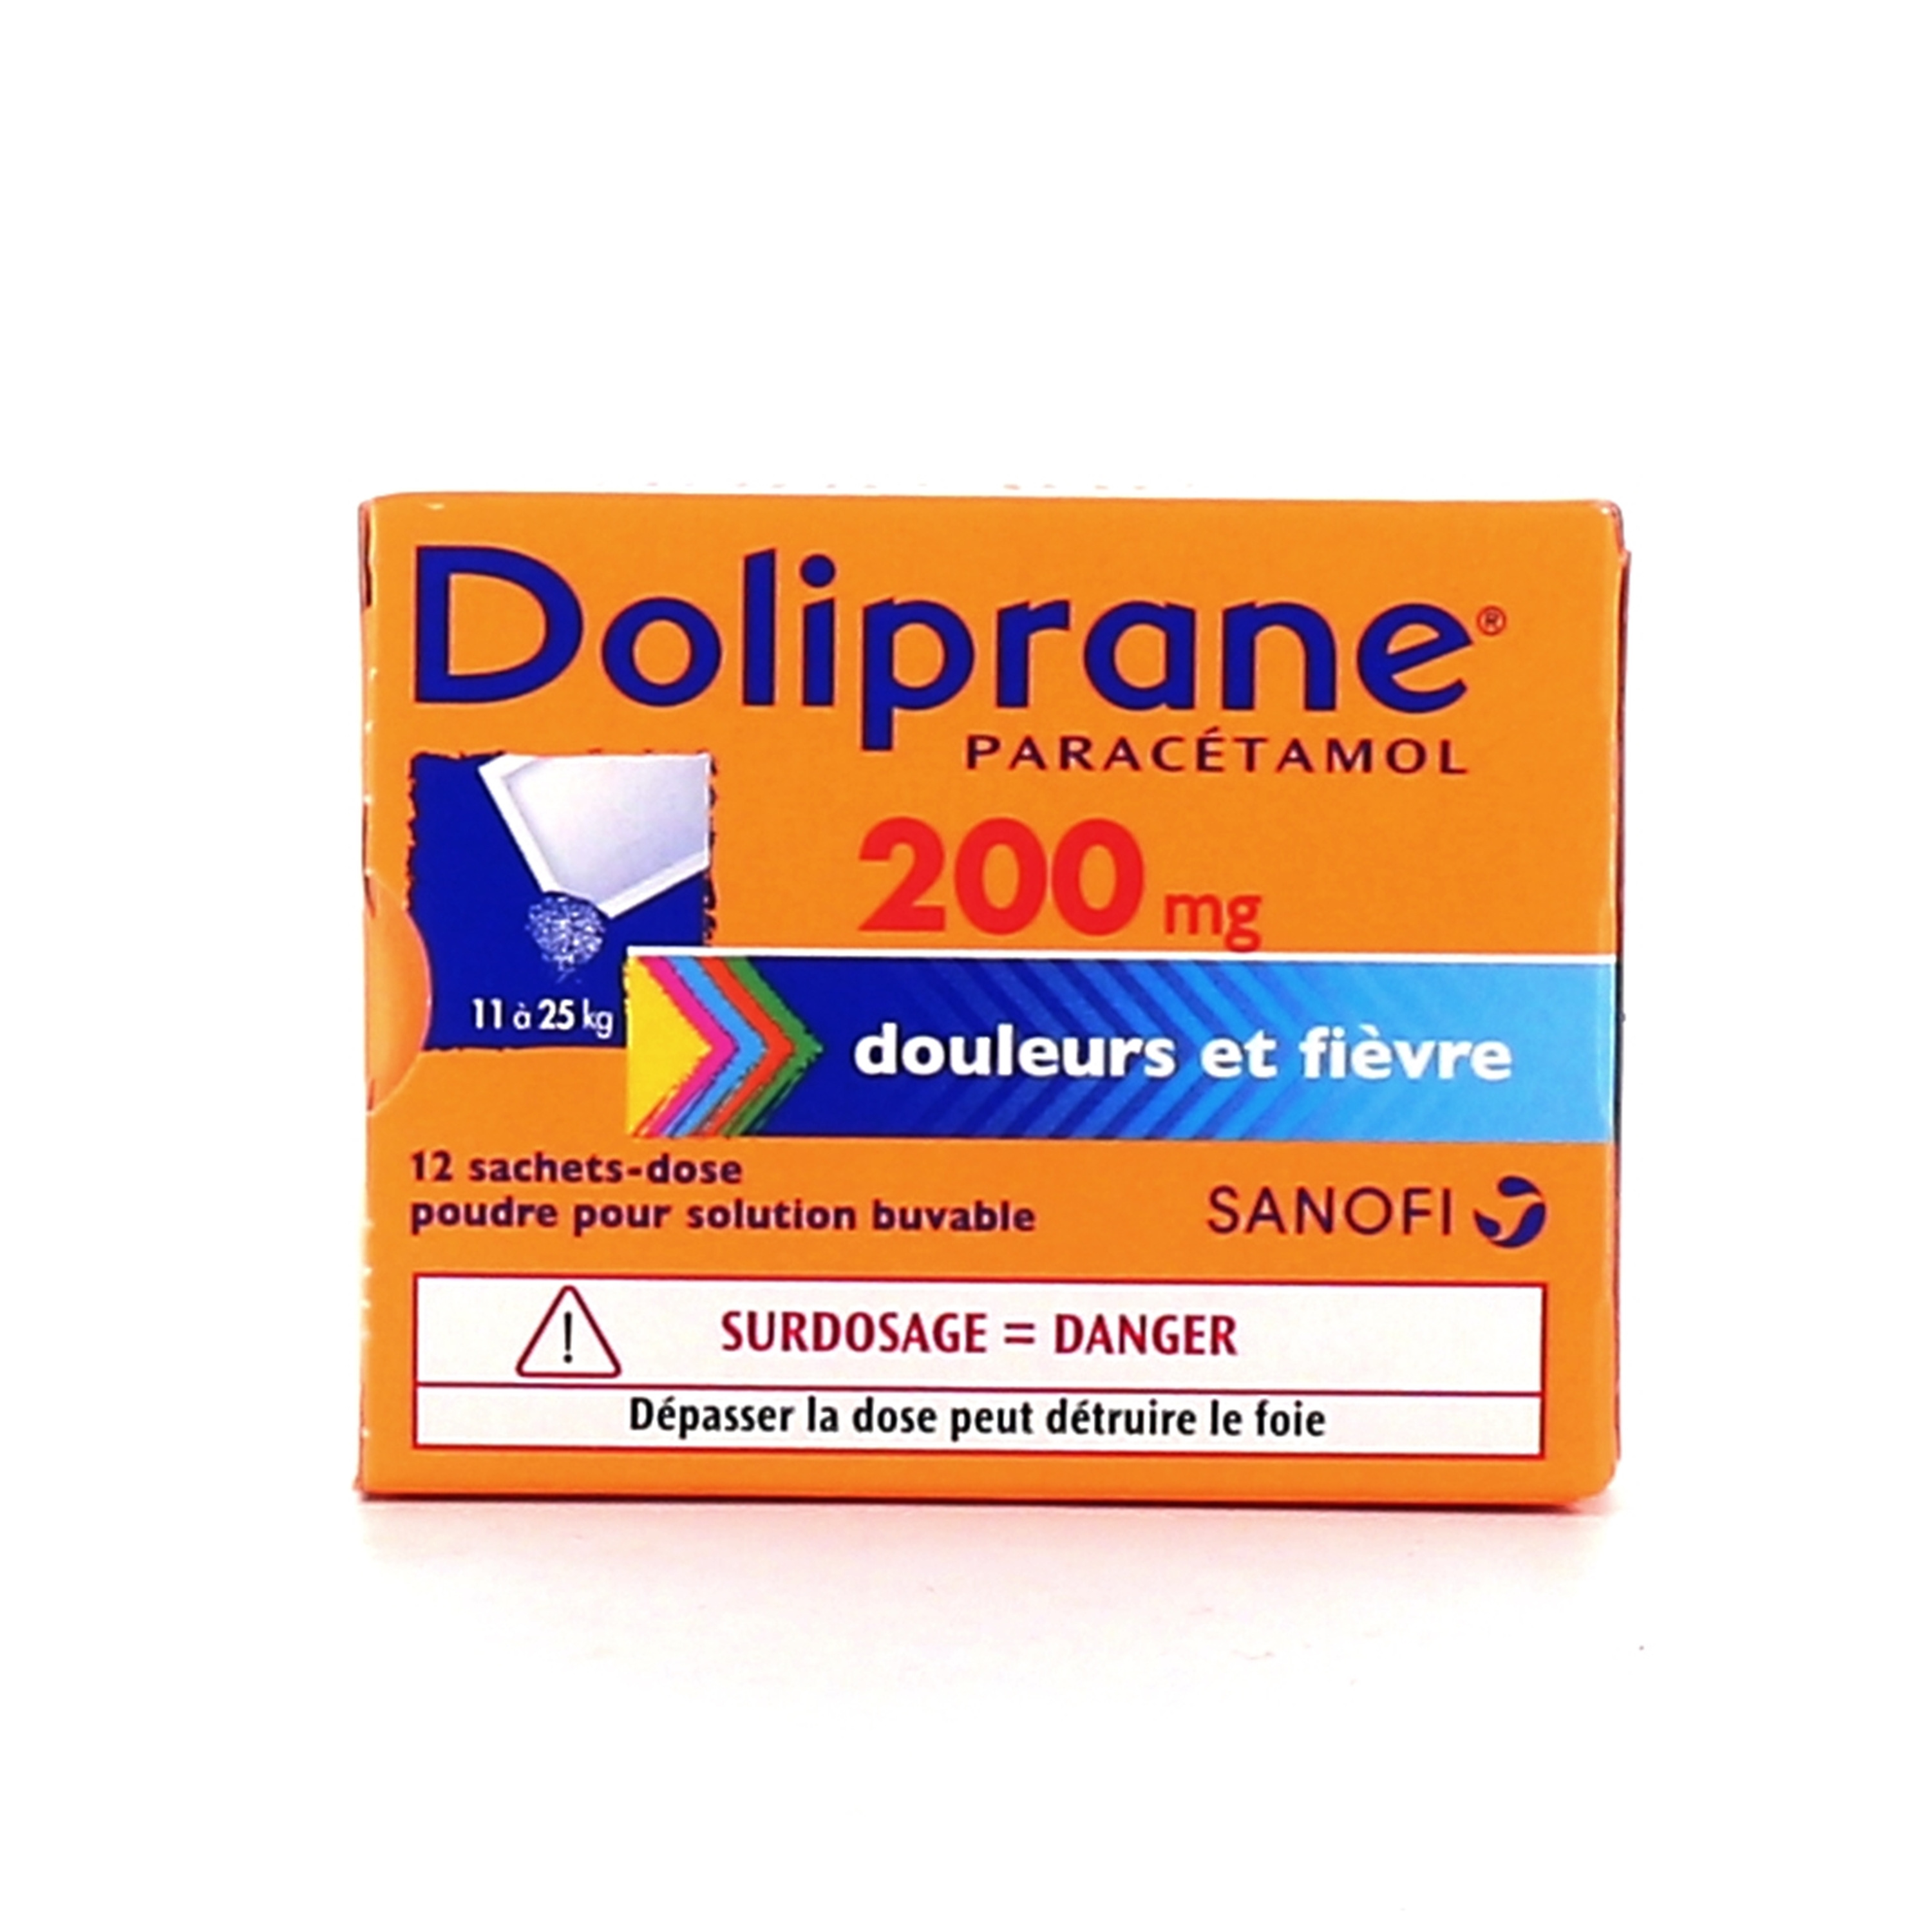 Doliprane poudre sachet solution buvable 1000 mg - Fièvre